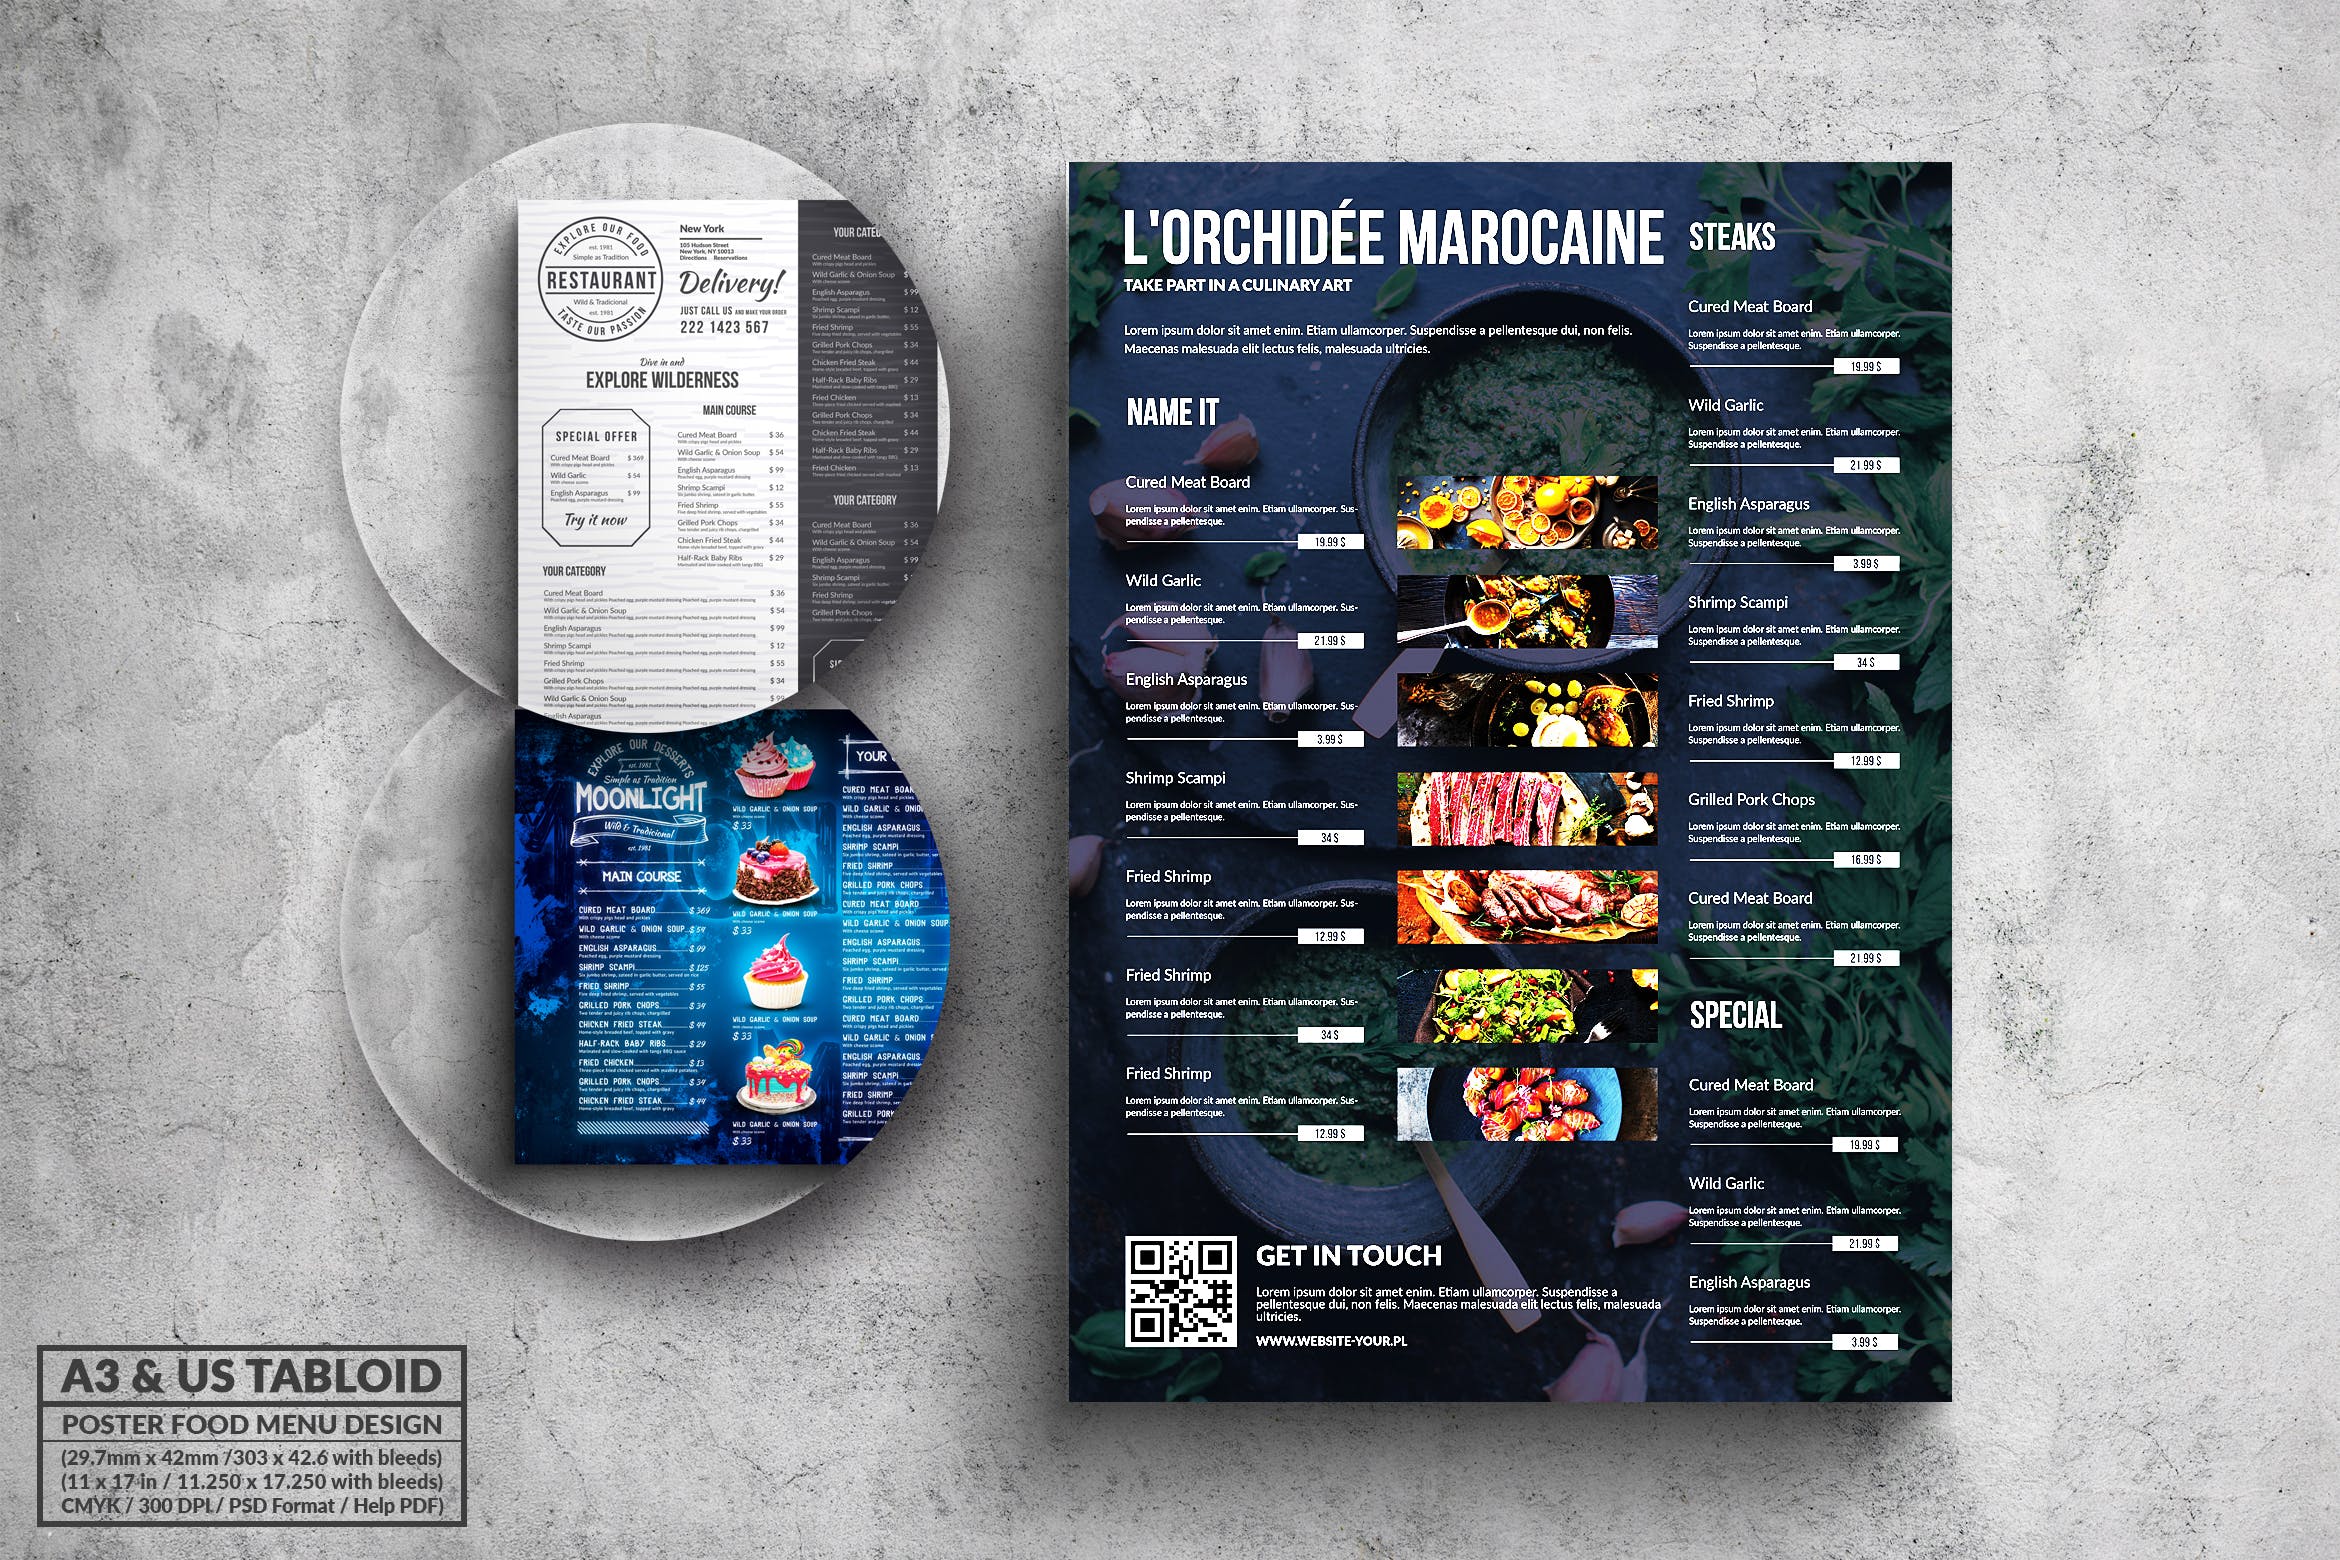 多合一餐馆餐厅菜单海报PSD素材16图库精选模板v1 Poster Food Menu A3 & US Tabloid Bundle插图